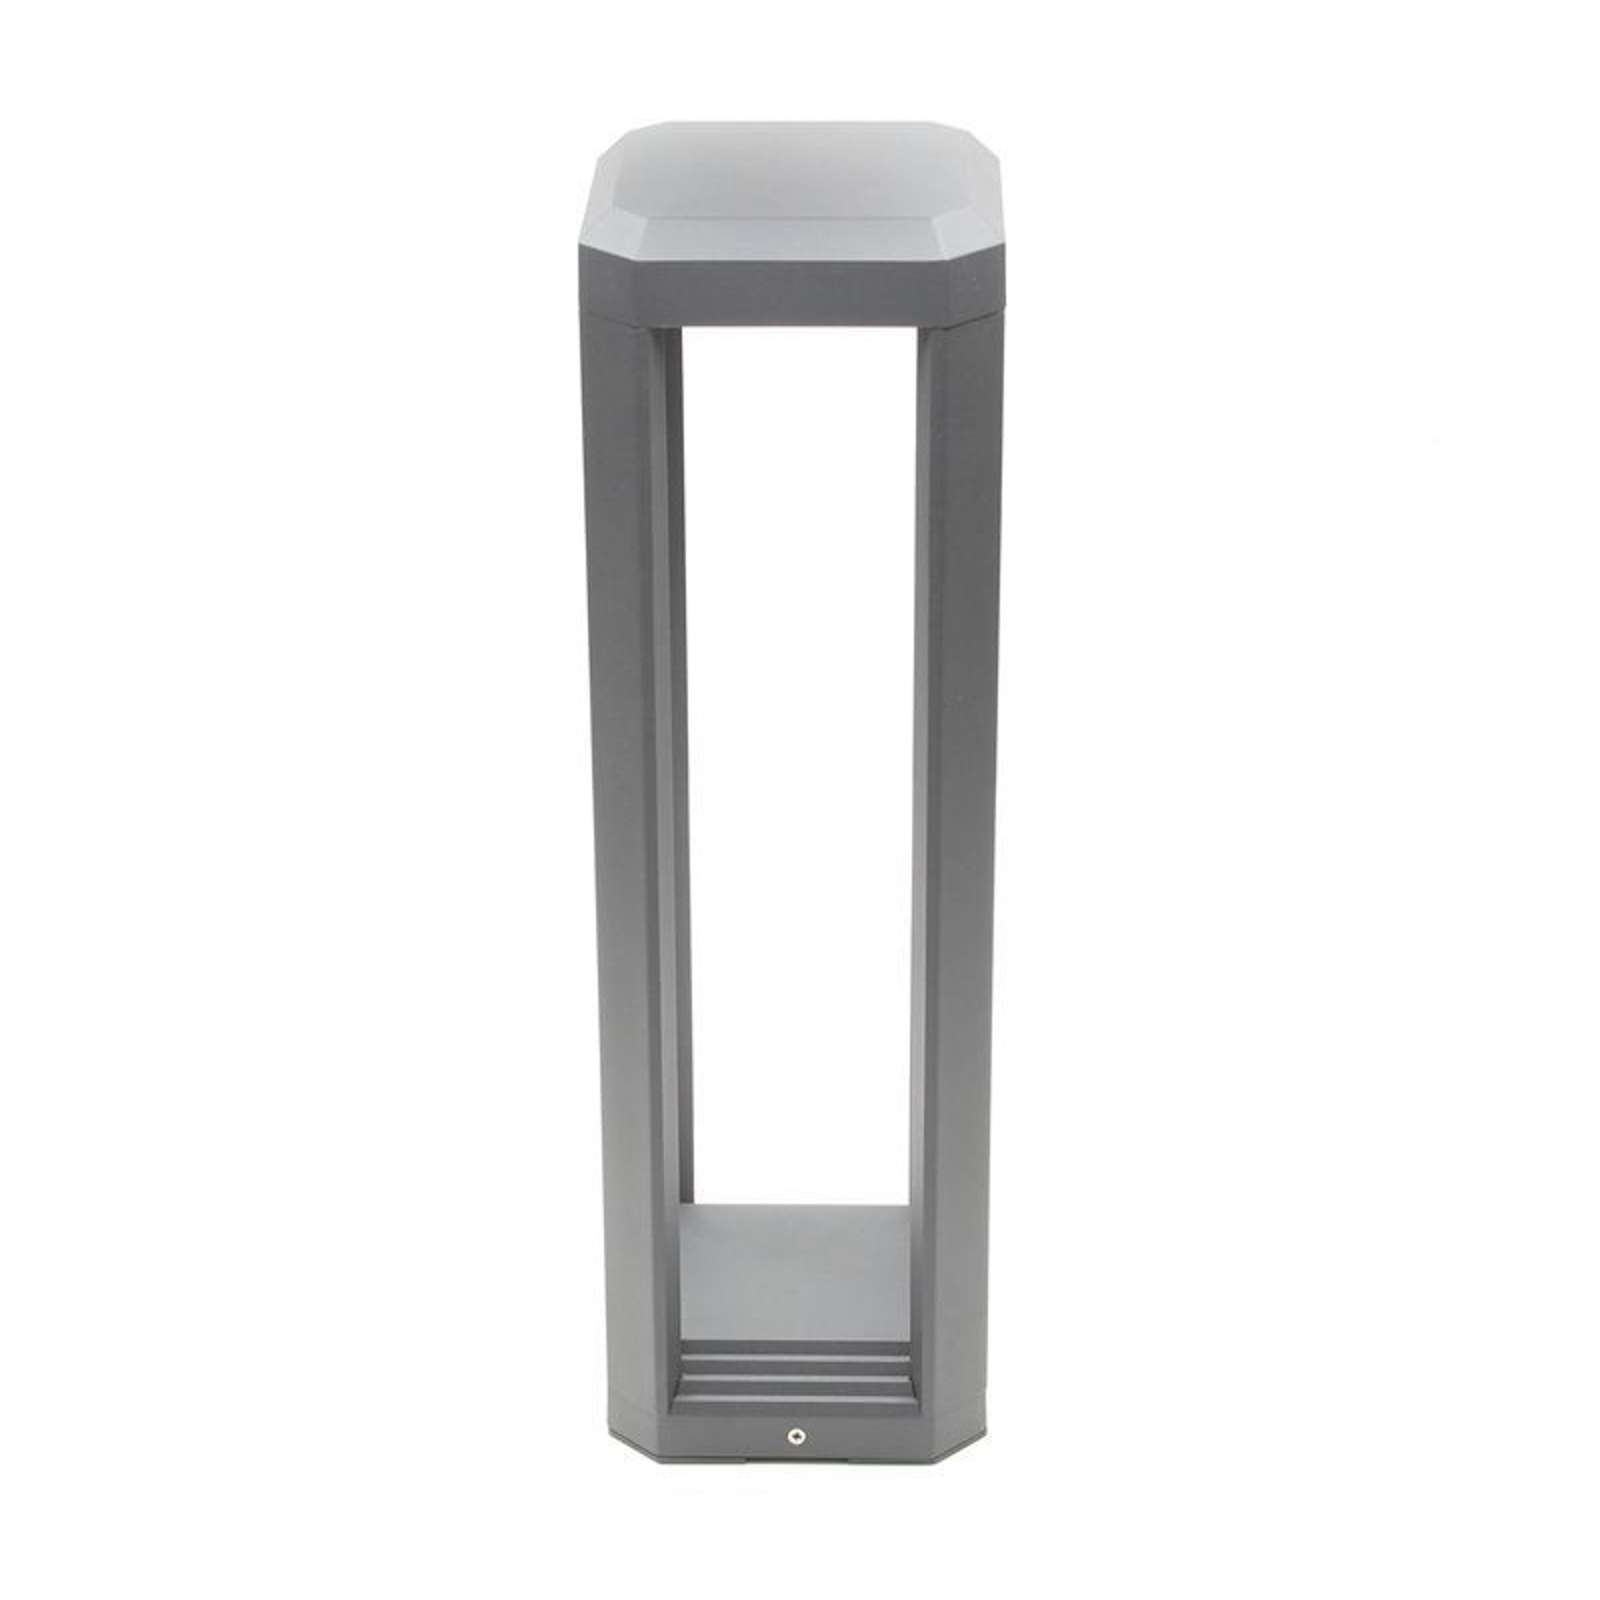 LED soklové světlo Rubkat, šedá, výška 50 cm